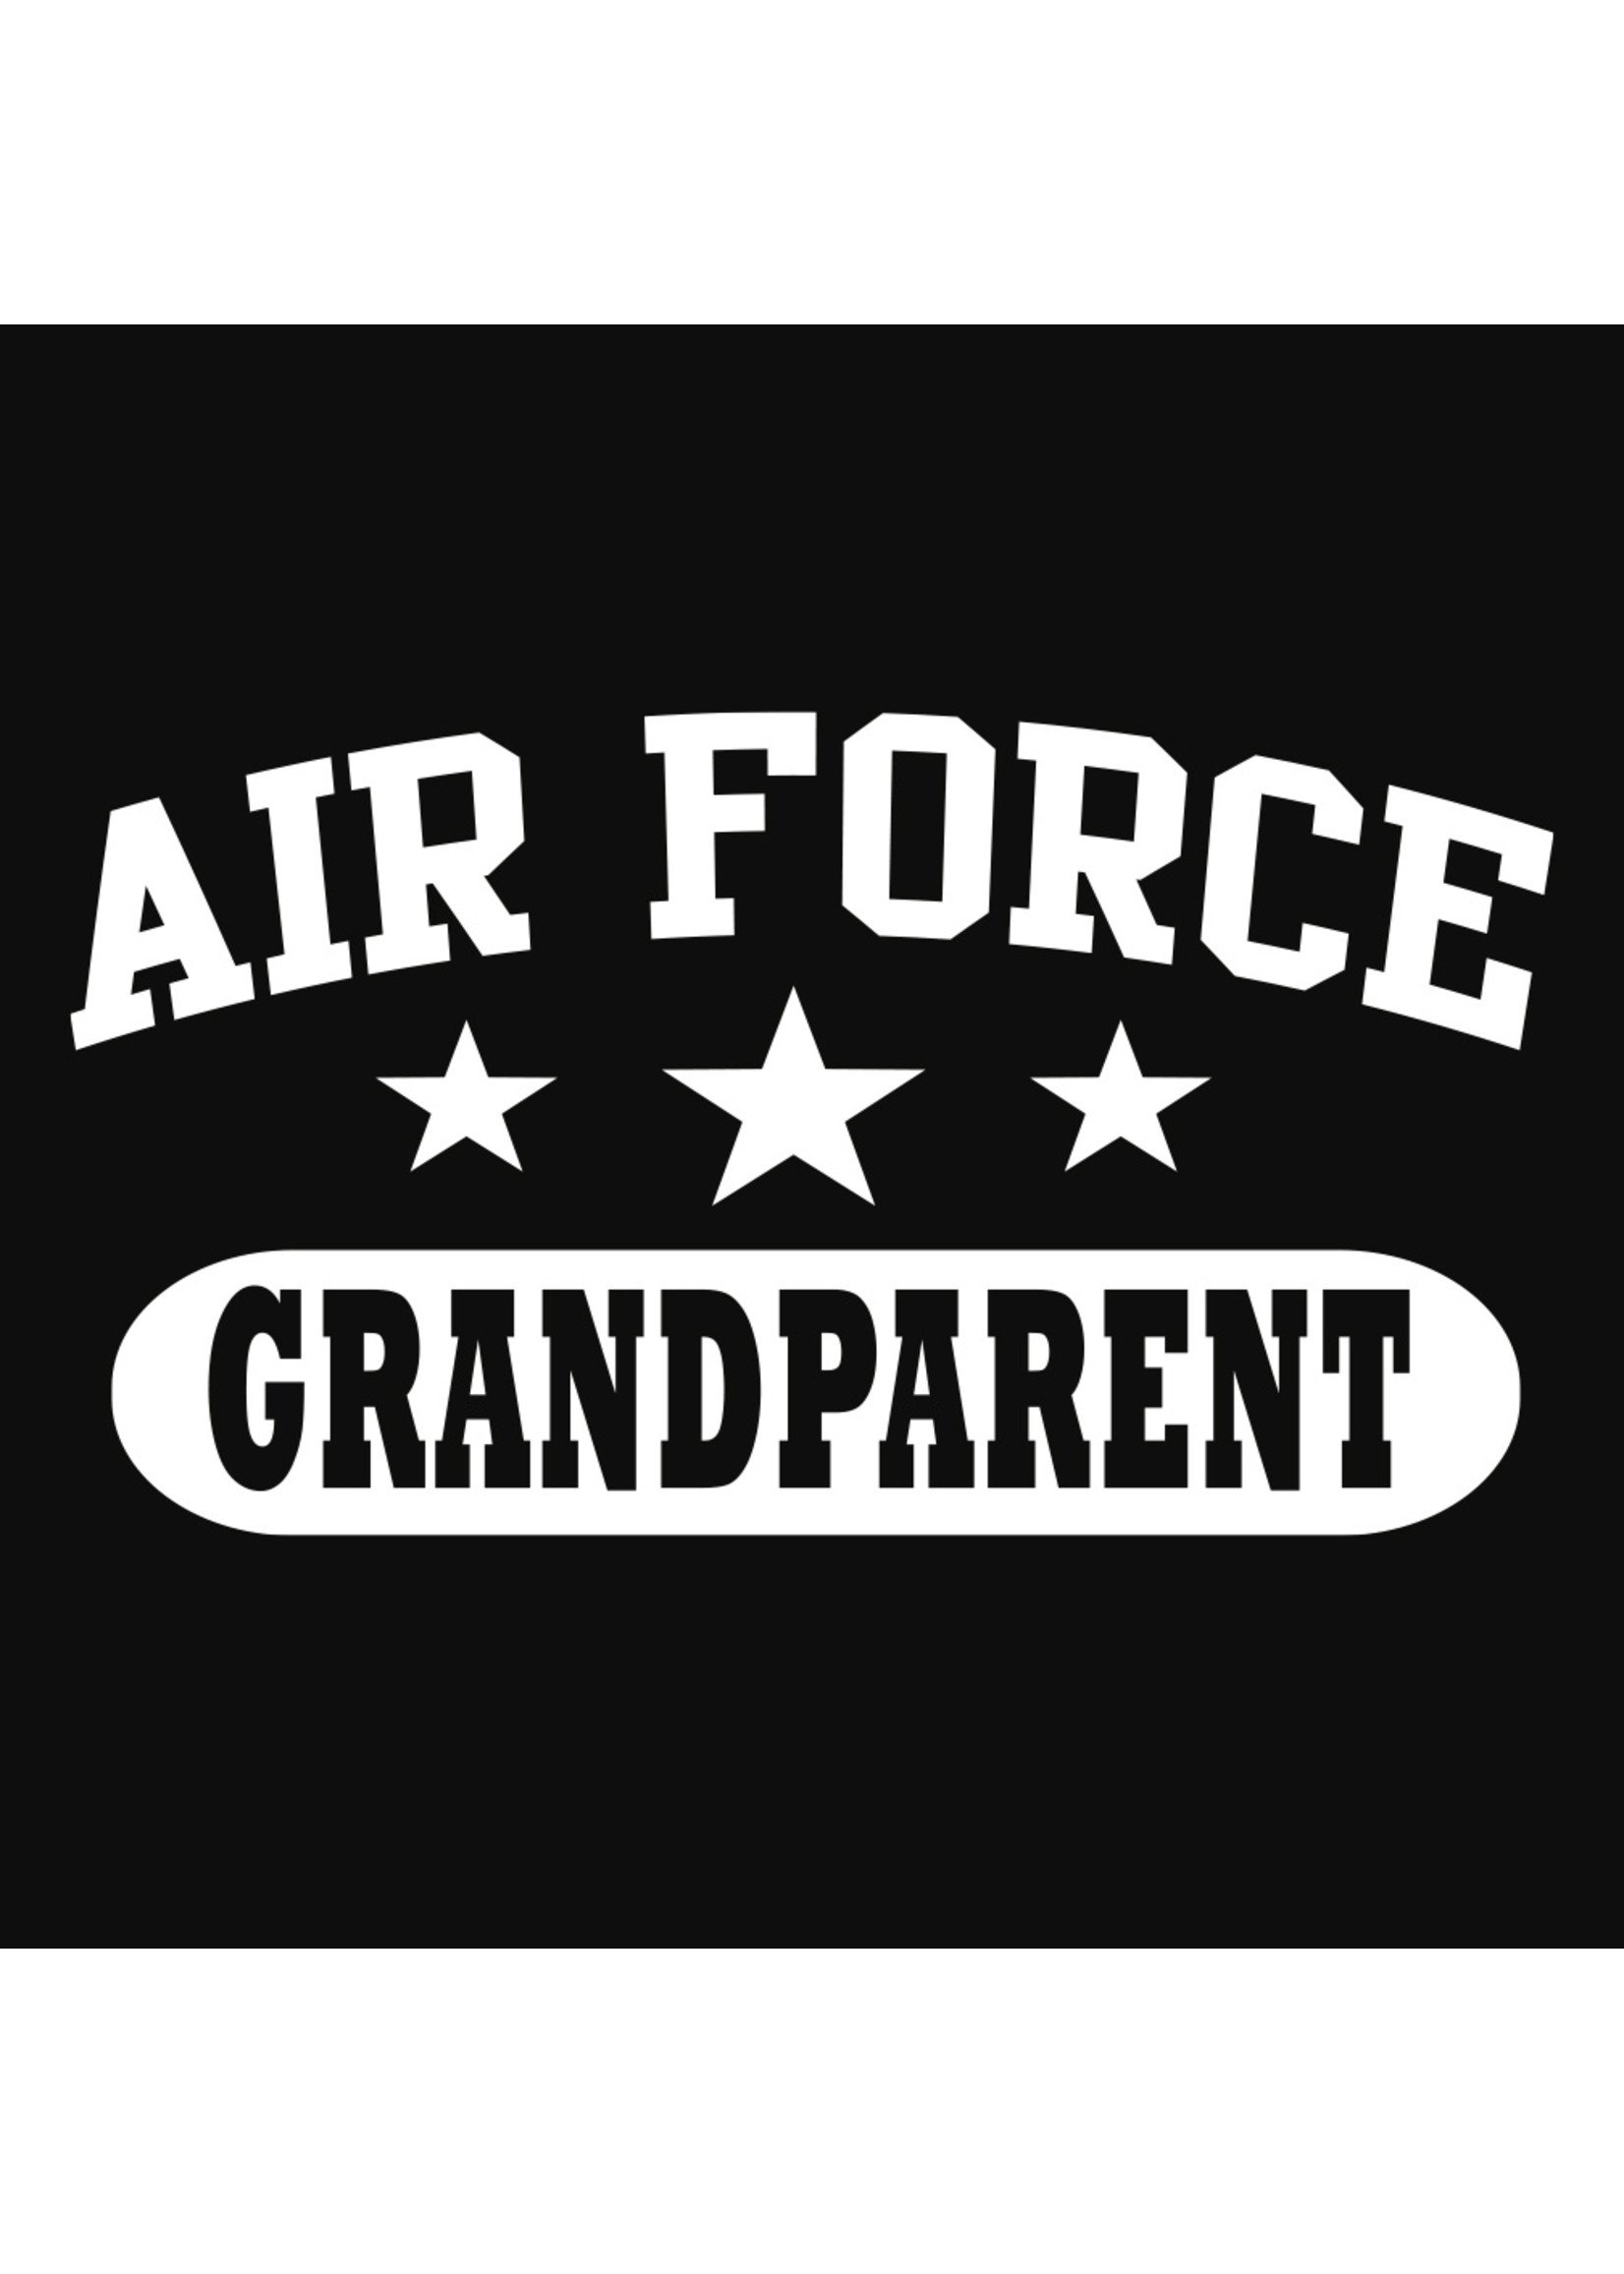 Air Force Grandparent Decal